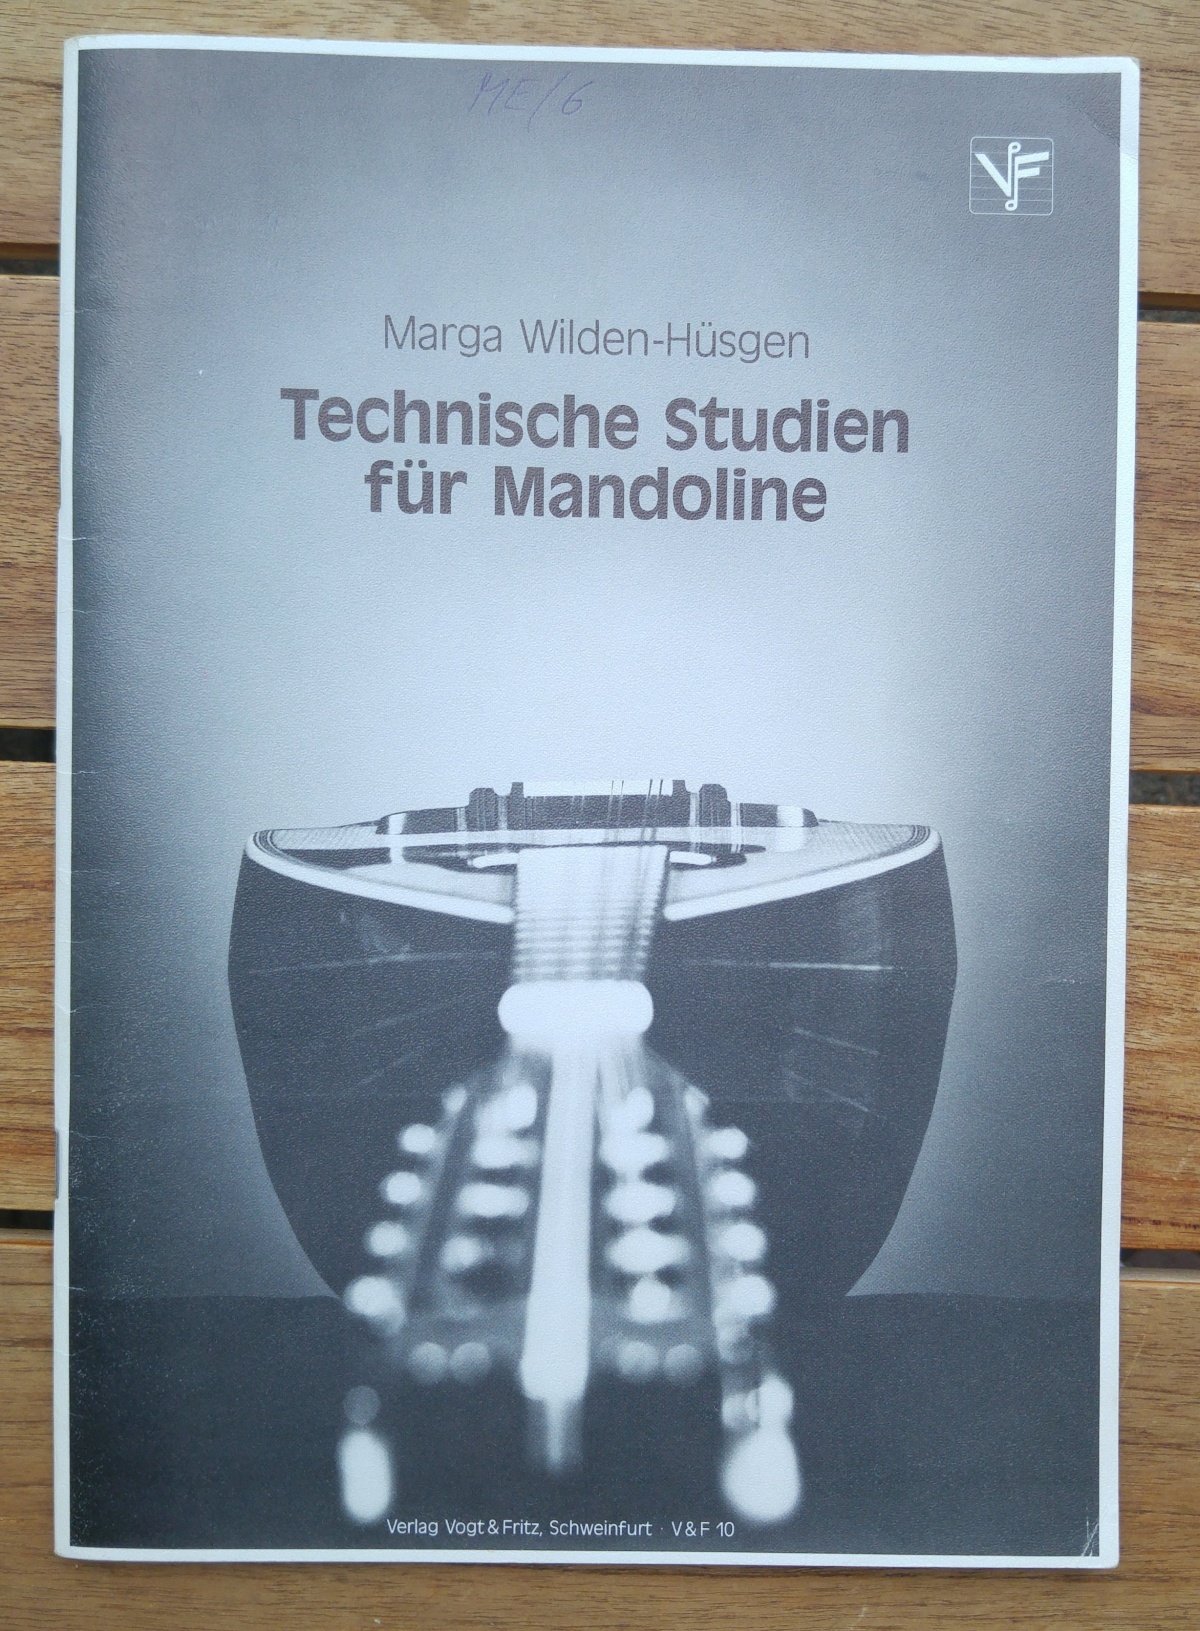 Marga Wilden-Hüsgen Mandoline Technische Studien